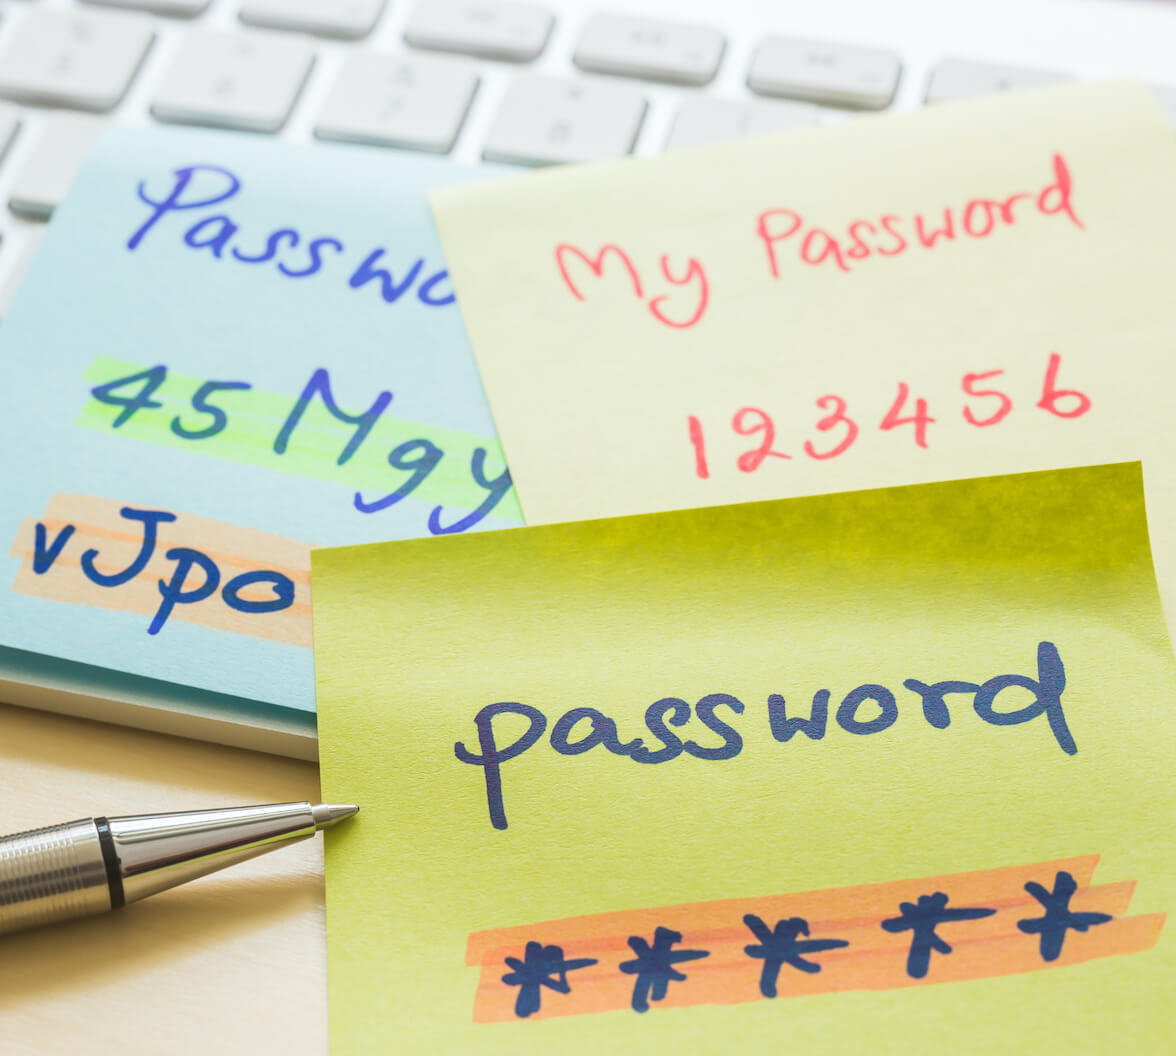 Creating Great Passwords